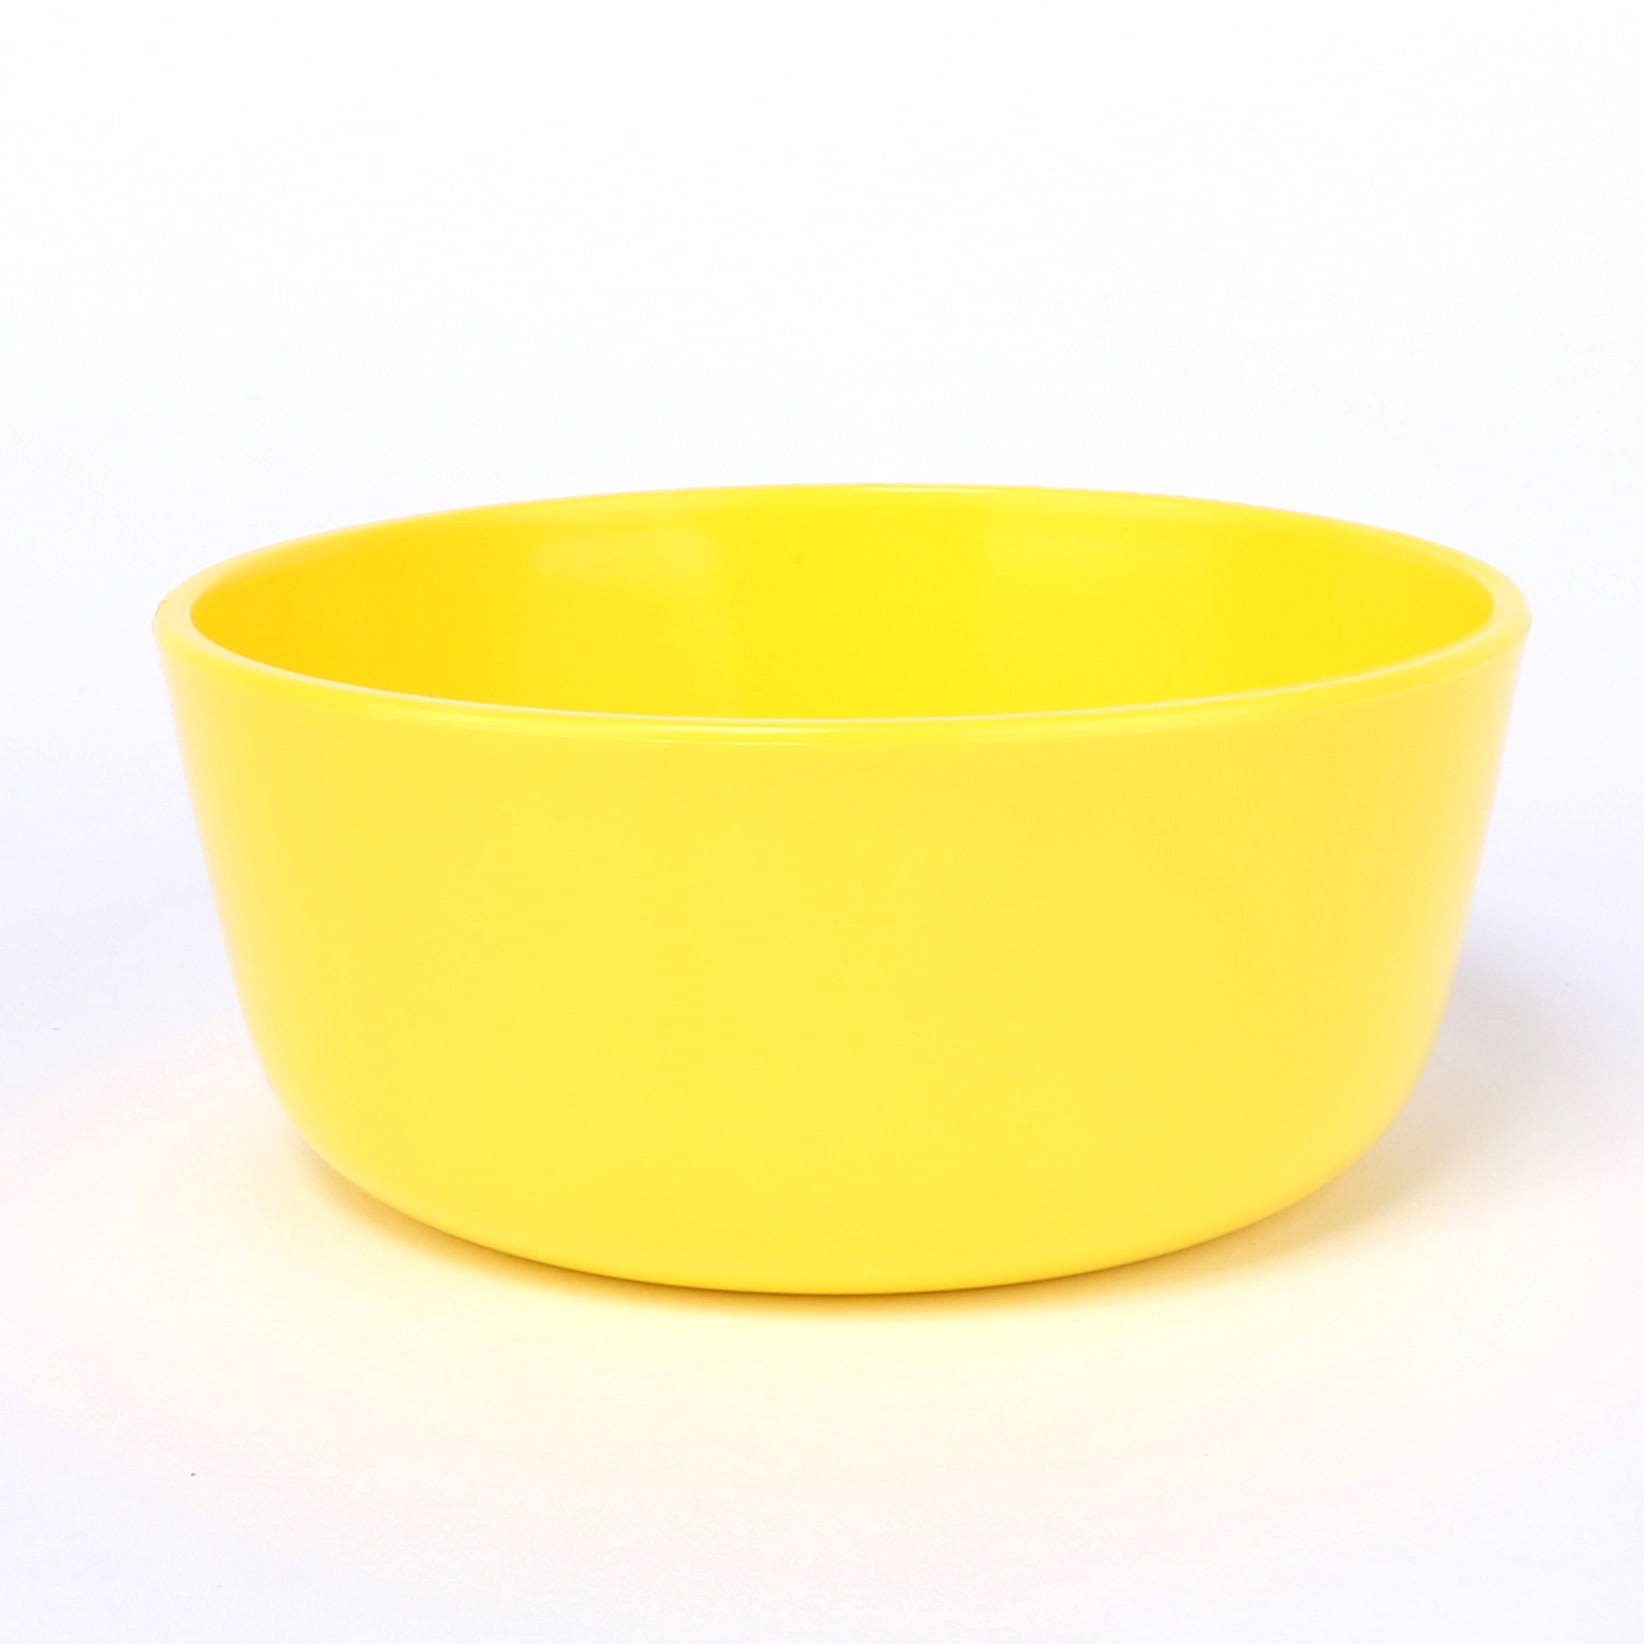 vaLon Zephyr hohe Dessertschale 11 cm aus schadstofffreiem Kunststoff in der Farbe sonnengelb.